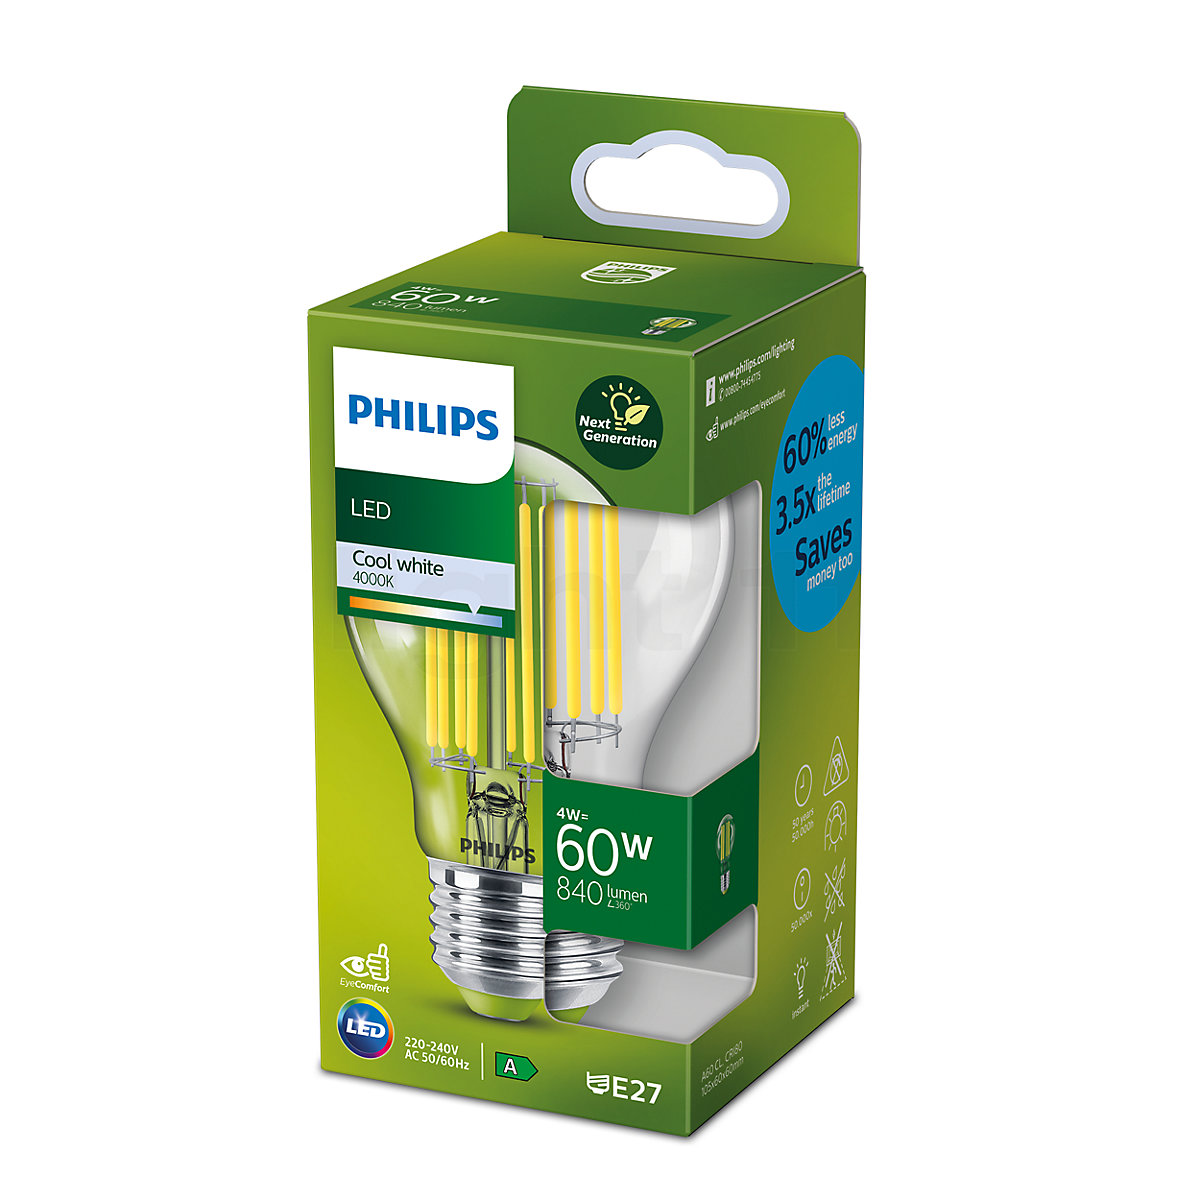 tsunamien Kollegium Van Buy Philips A60 4W/c 840, E27 Filament LED at light11.eu